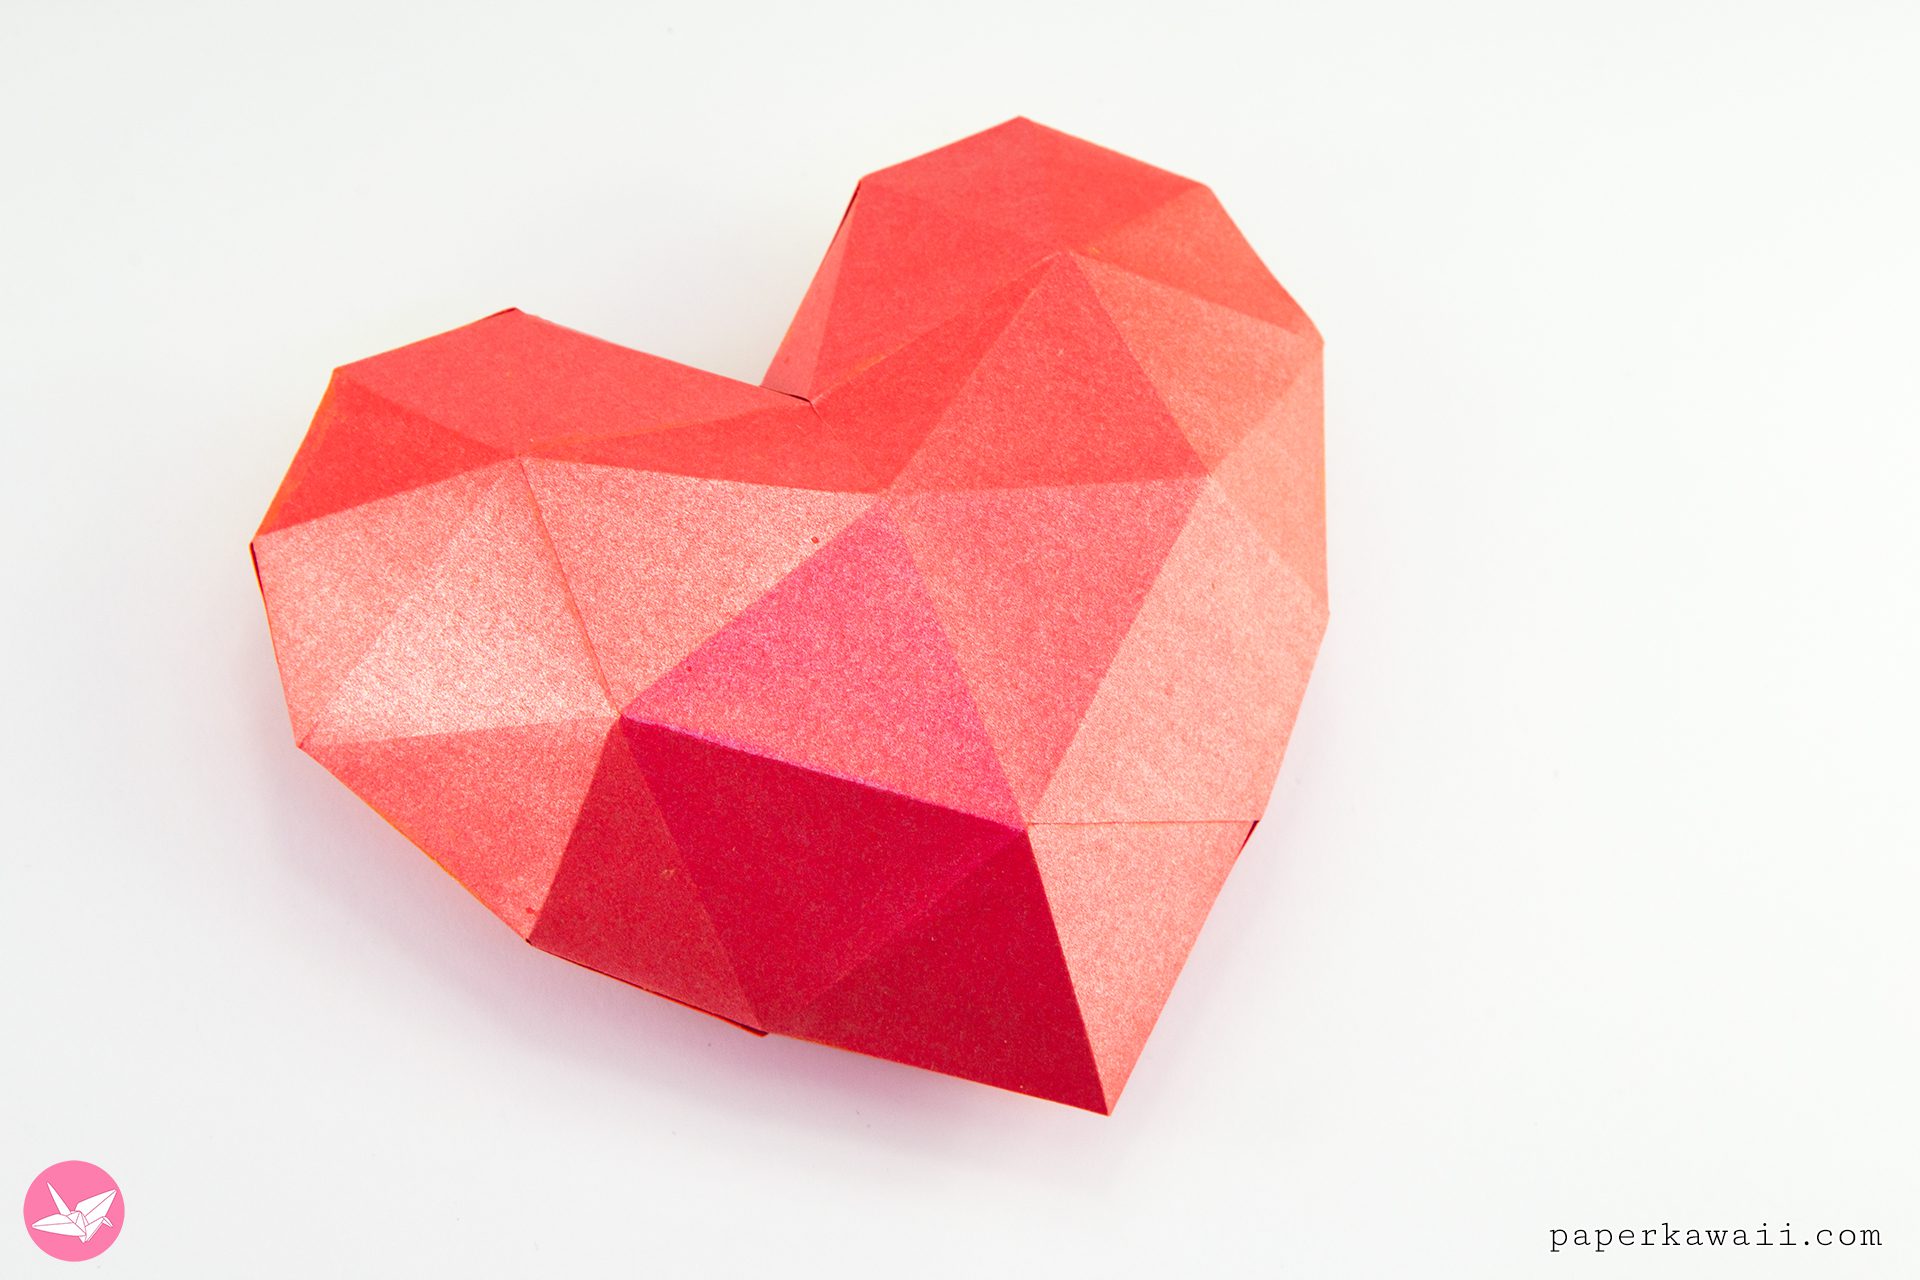 3D Paper Heart Tutorial & Free Template - Paper Kawaii